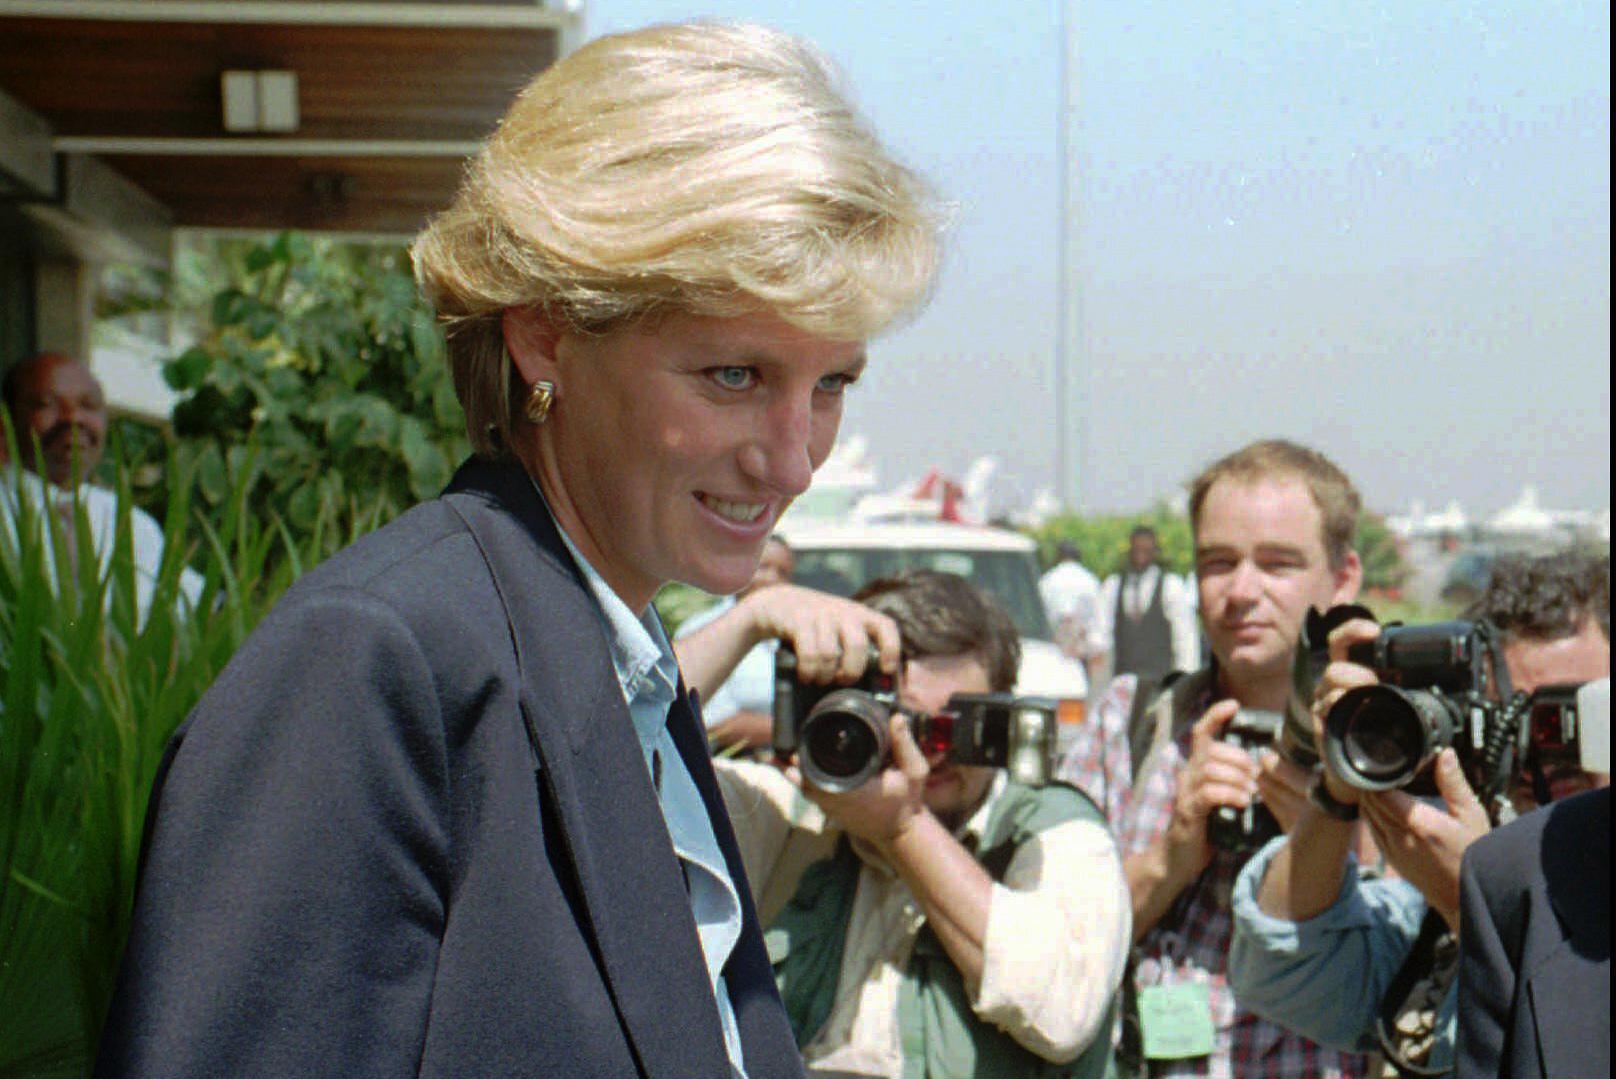 L’ex guardia del corpo della principessa Diana: “Se avessi lavorato quella notte, potresti essere ancora lì”